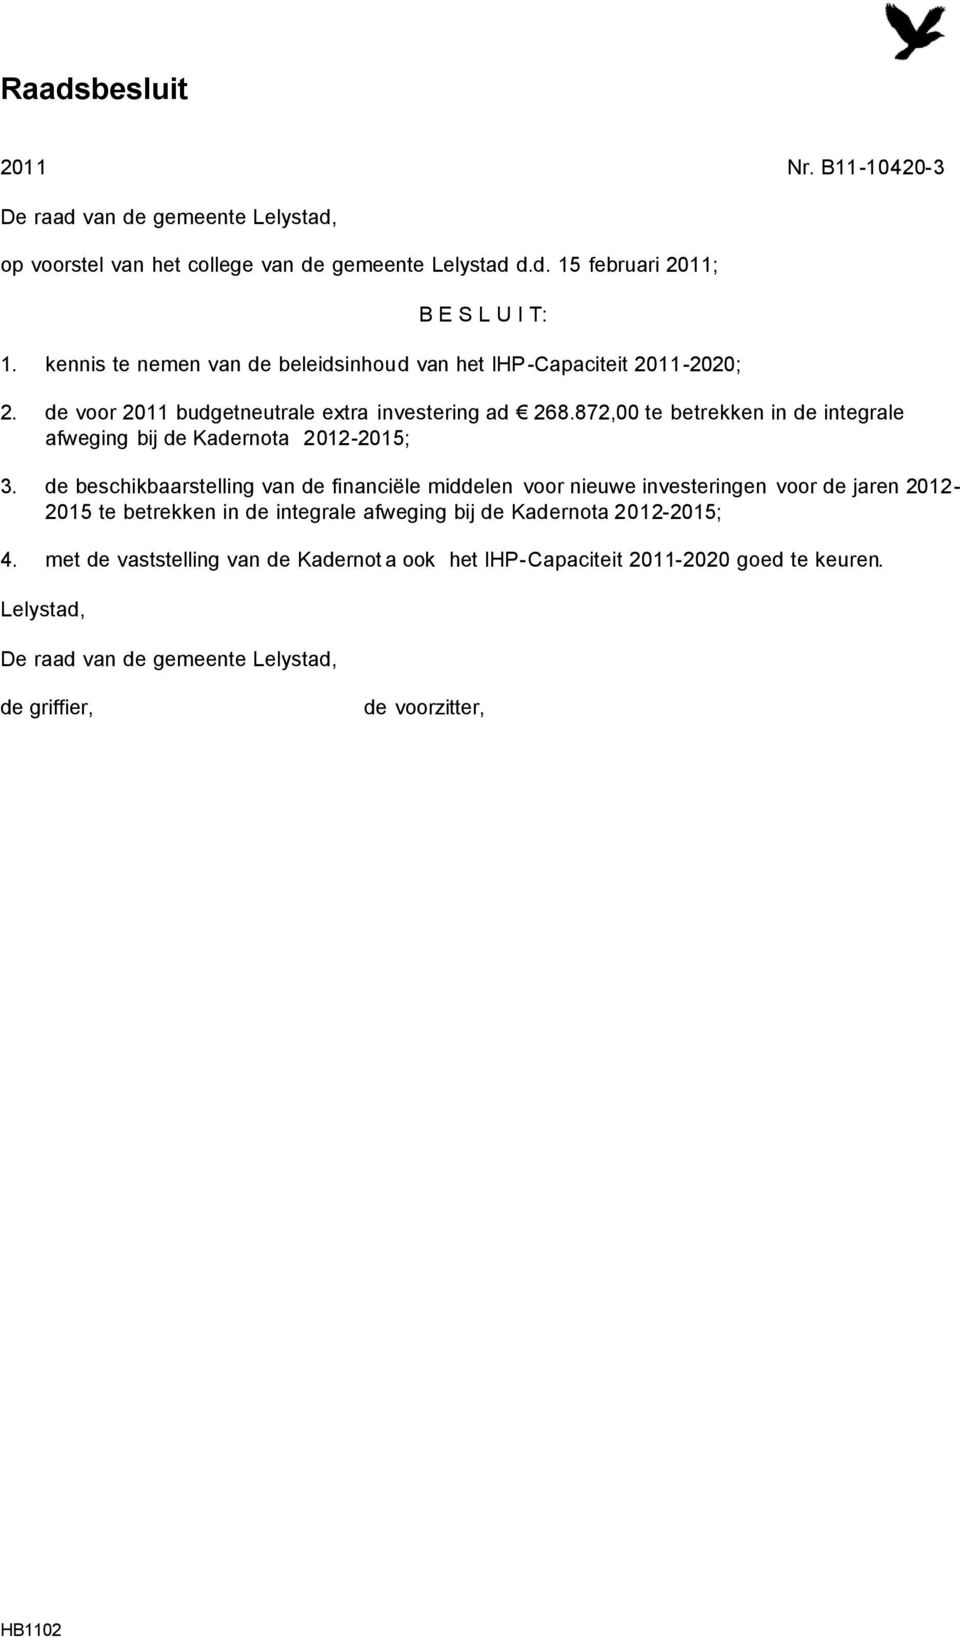 872,00 te betrekken in de integrale afweging bij de Kadernota 2012-2015; 3.